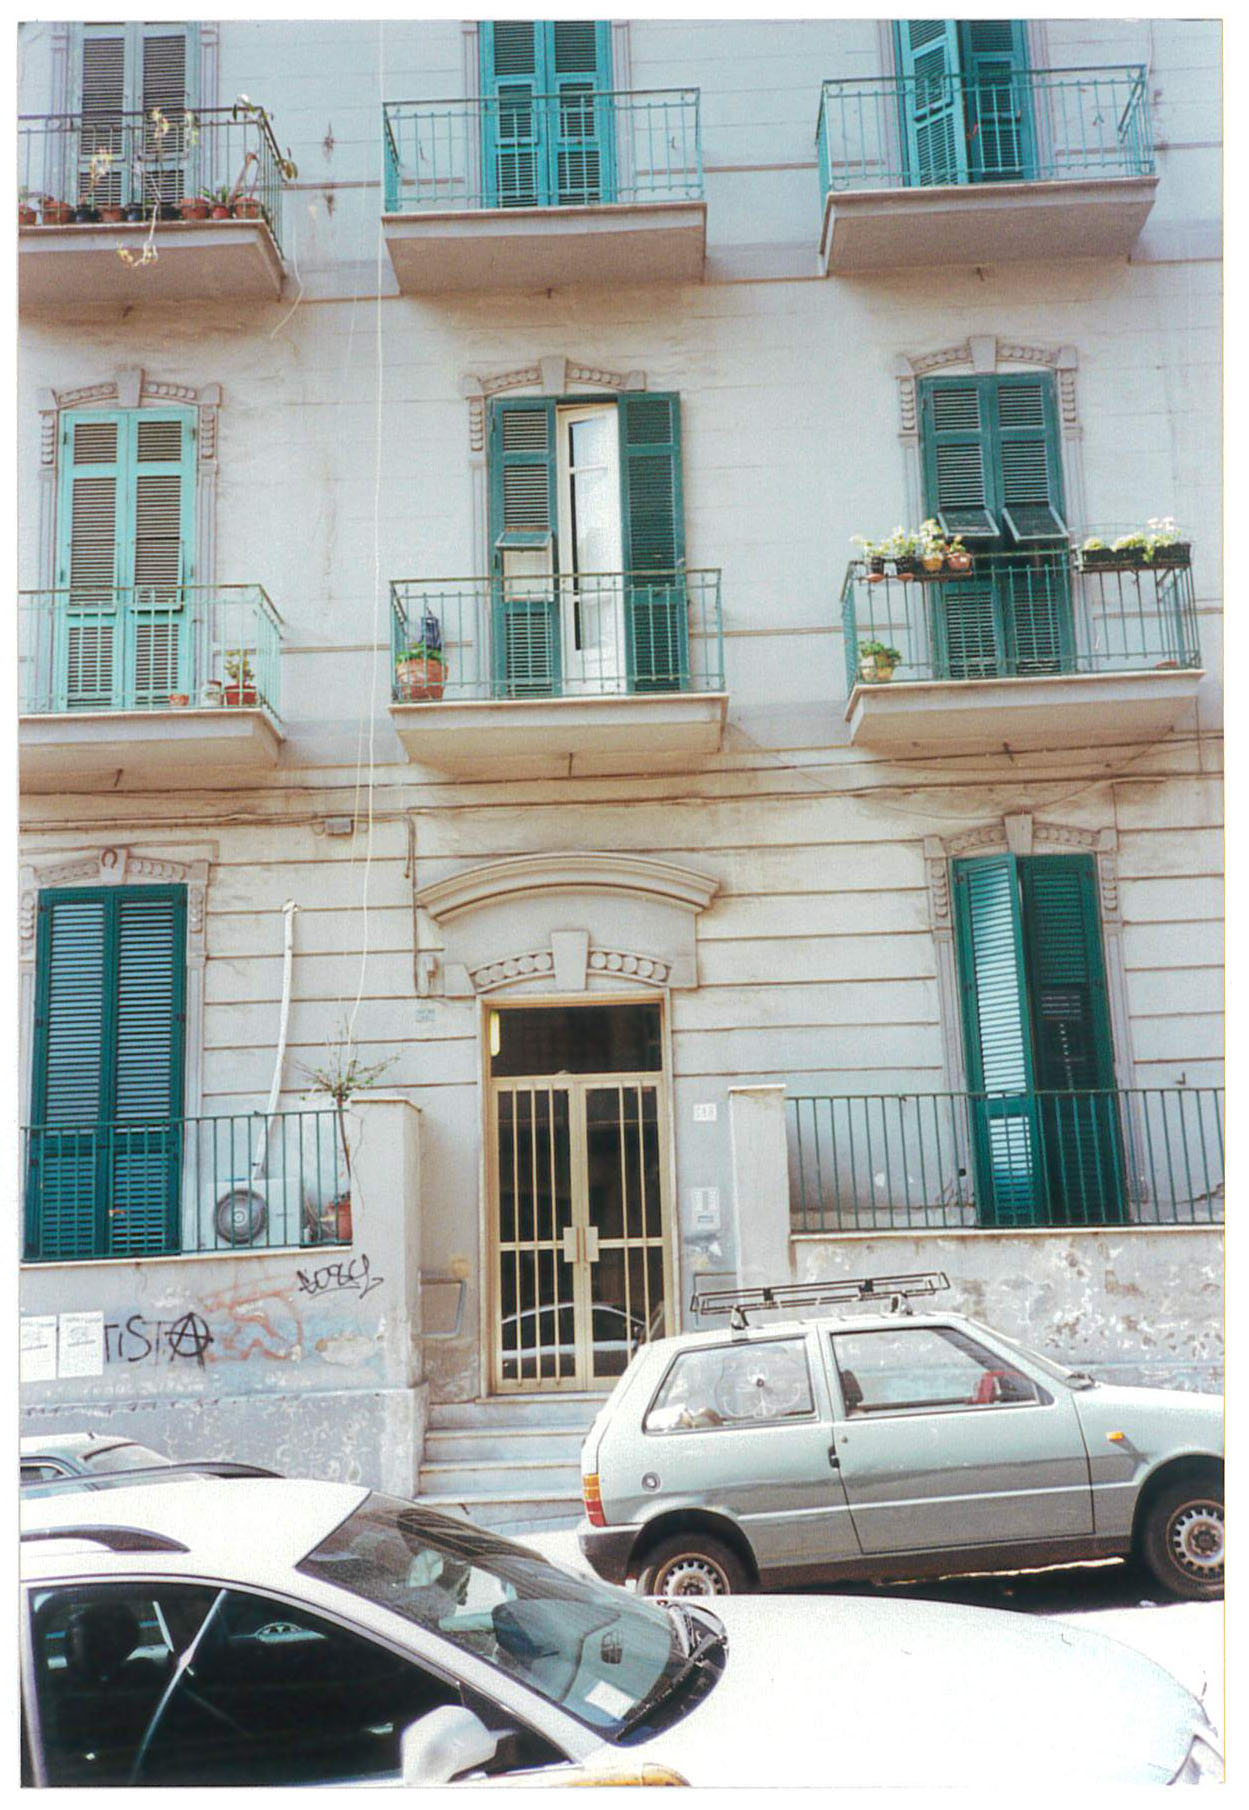 palazzo in via Francesco Solimene 118 (palazzo, civico) - Napoli (NA)  (XX, prima metà)